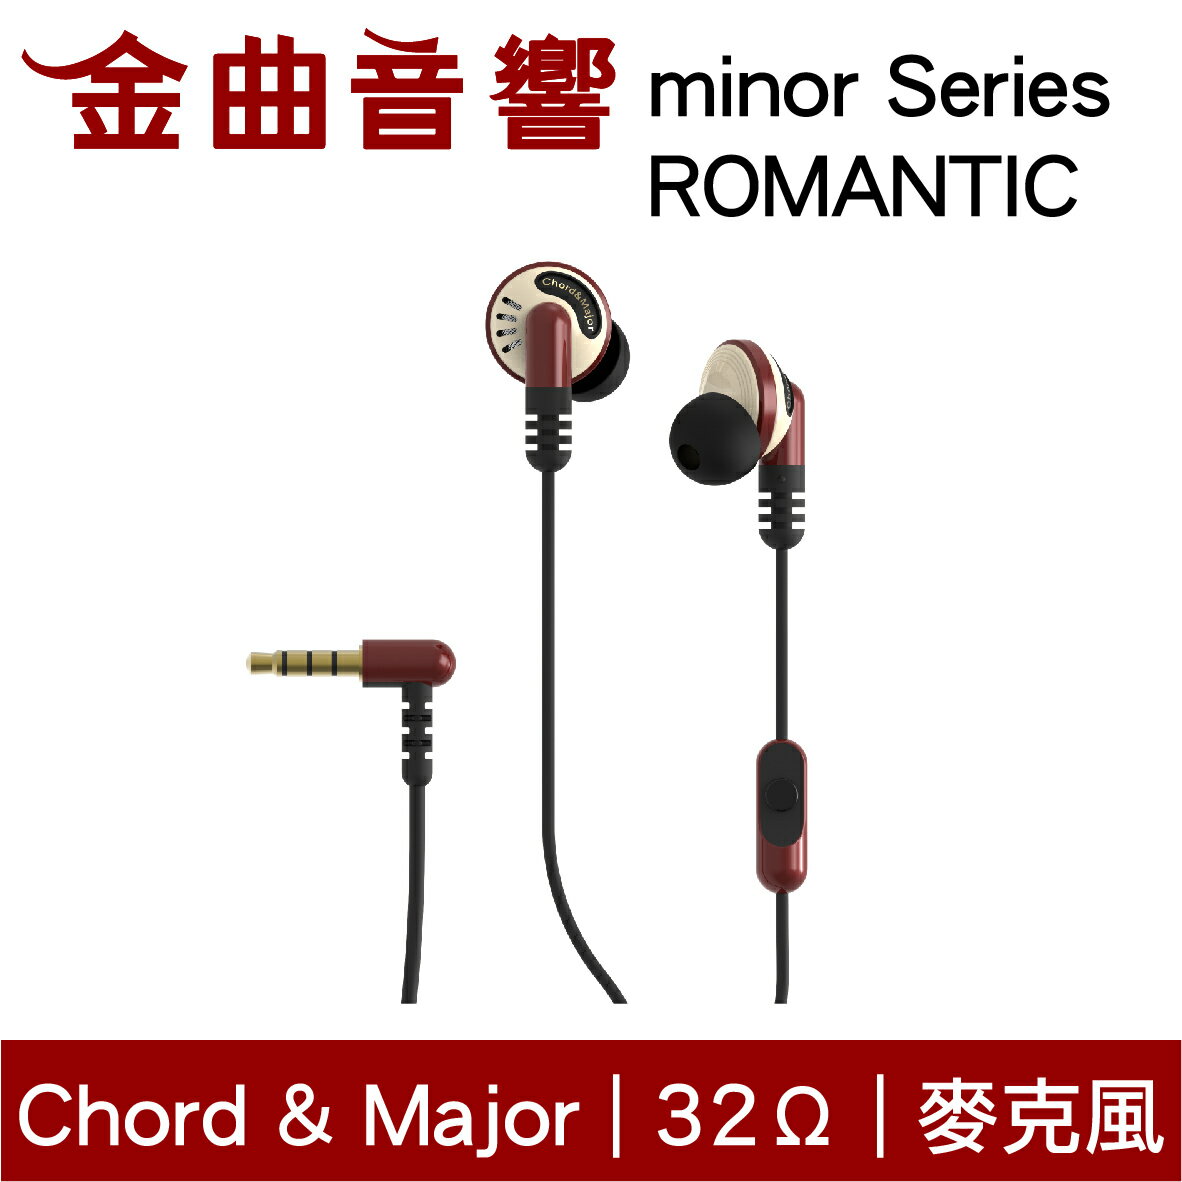 Chord & Major 小調性耳機 minor series ROMANTIC浪漫時代 耳道式 耳機 | 金曲音響